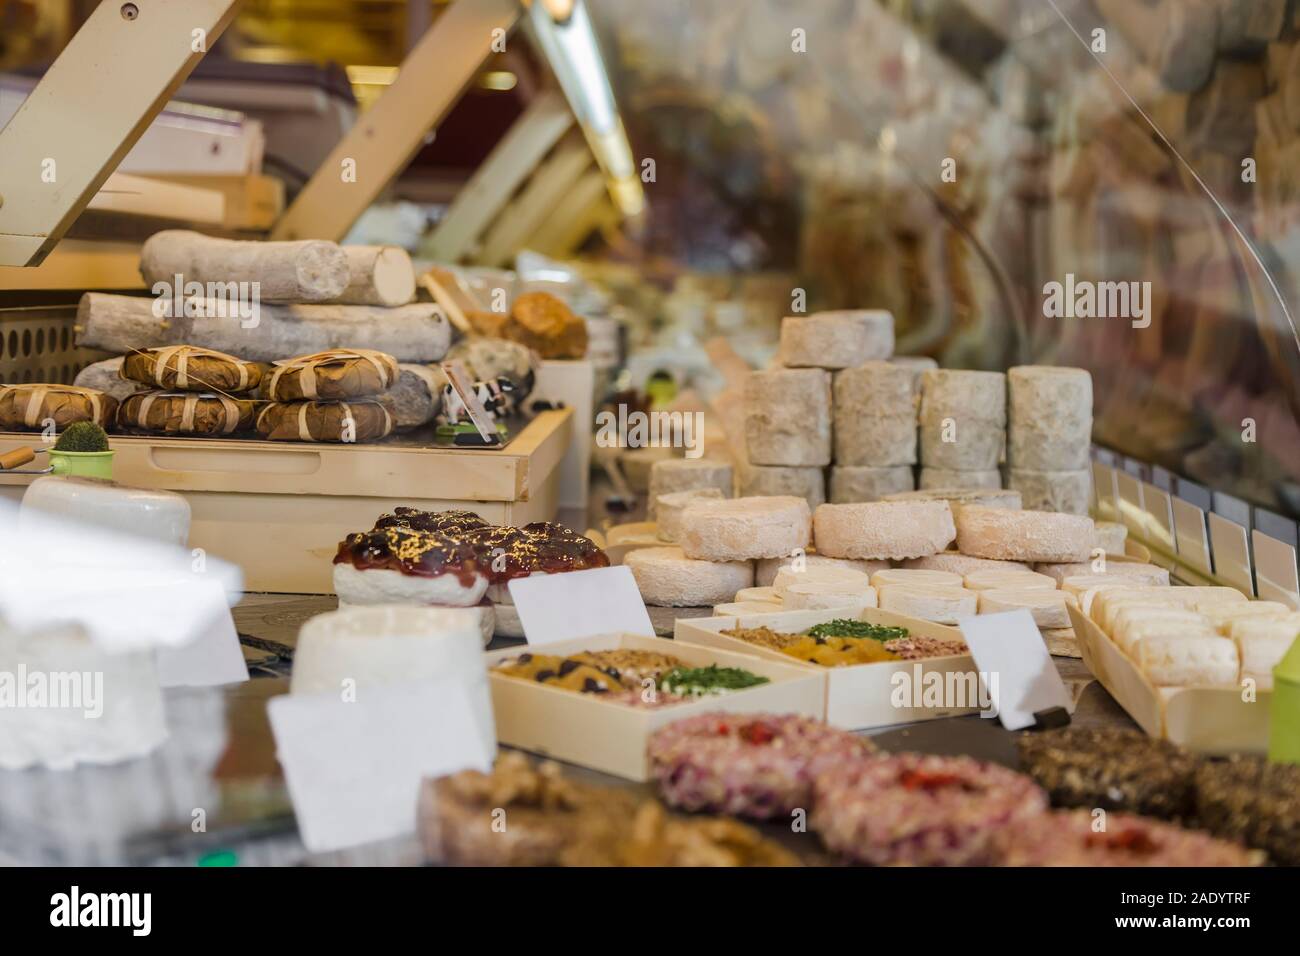 Grand choix de fromages au comptoir d'un petit magasin Banque D'Images